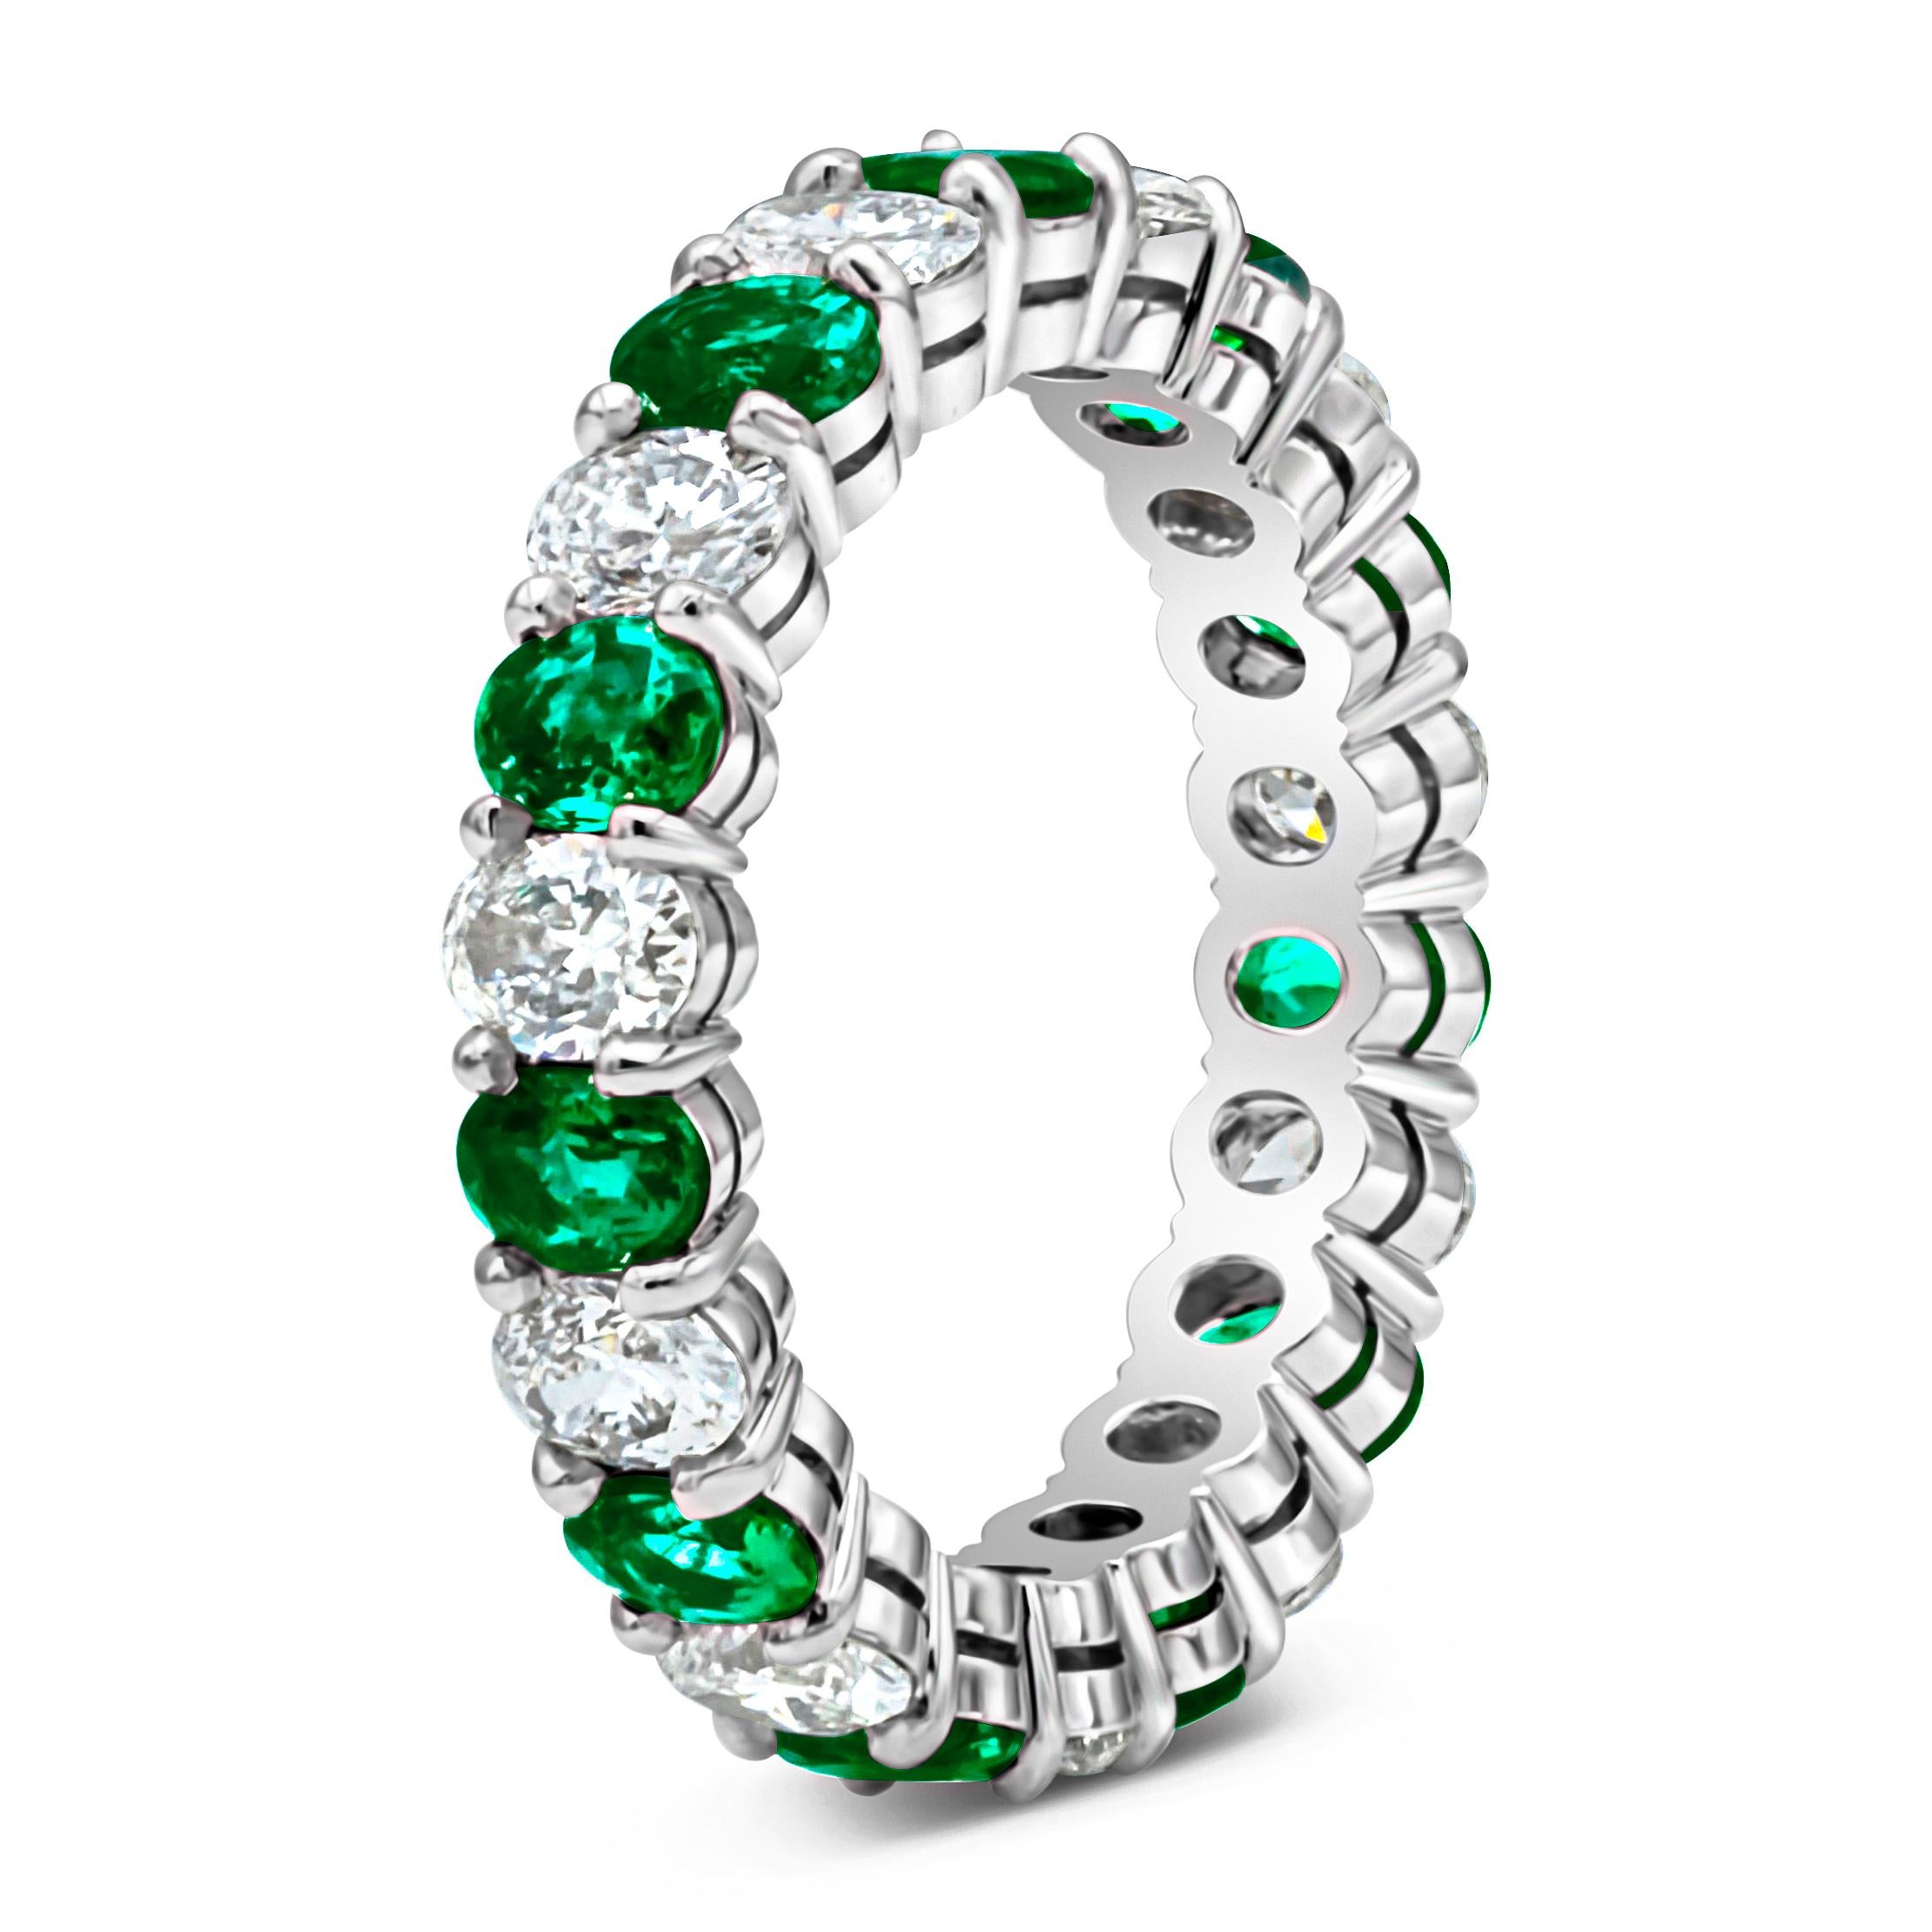 Dieser stilvolle und atemberaubende Ehering präsentiert abwechselnd oval geschliffene grüne Smaragde mit einem Gesamtgewicht von 1,56 Karat und brillante runde Diamanten mit einem Gesamtgewicht von 1,60 Karat, Farbe E-F und Reinheit VS-SI. Gefasst